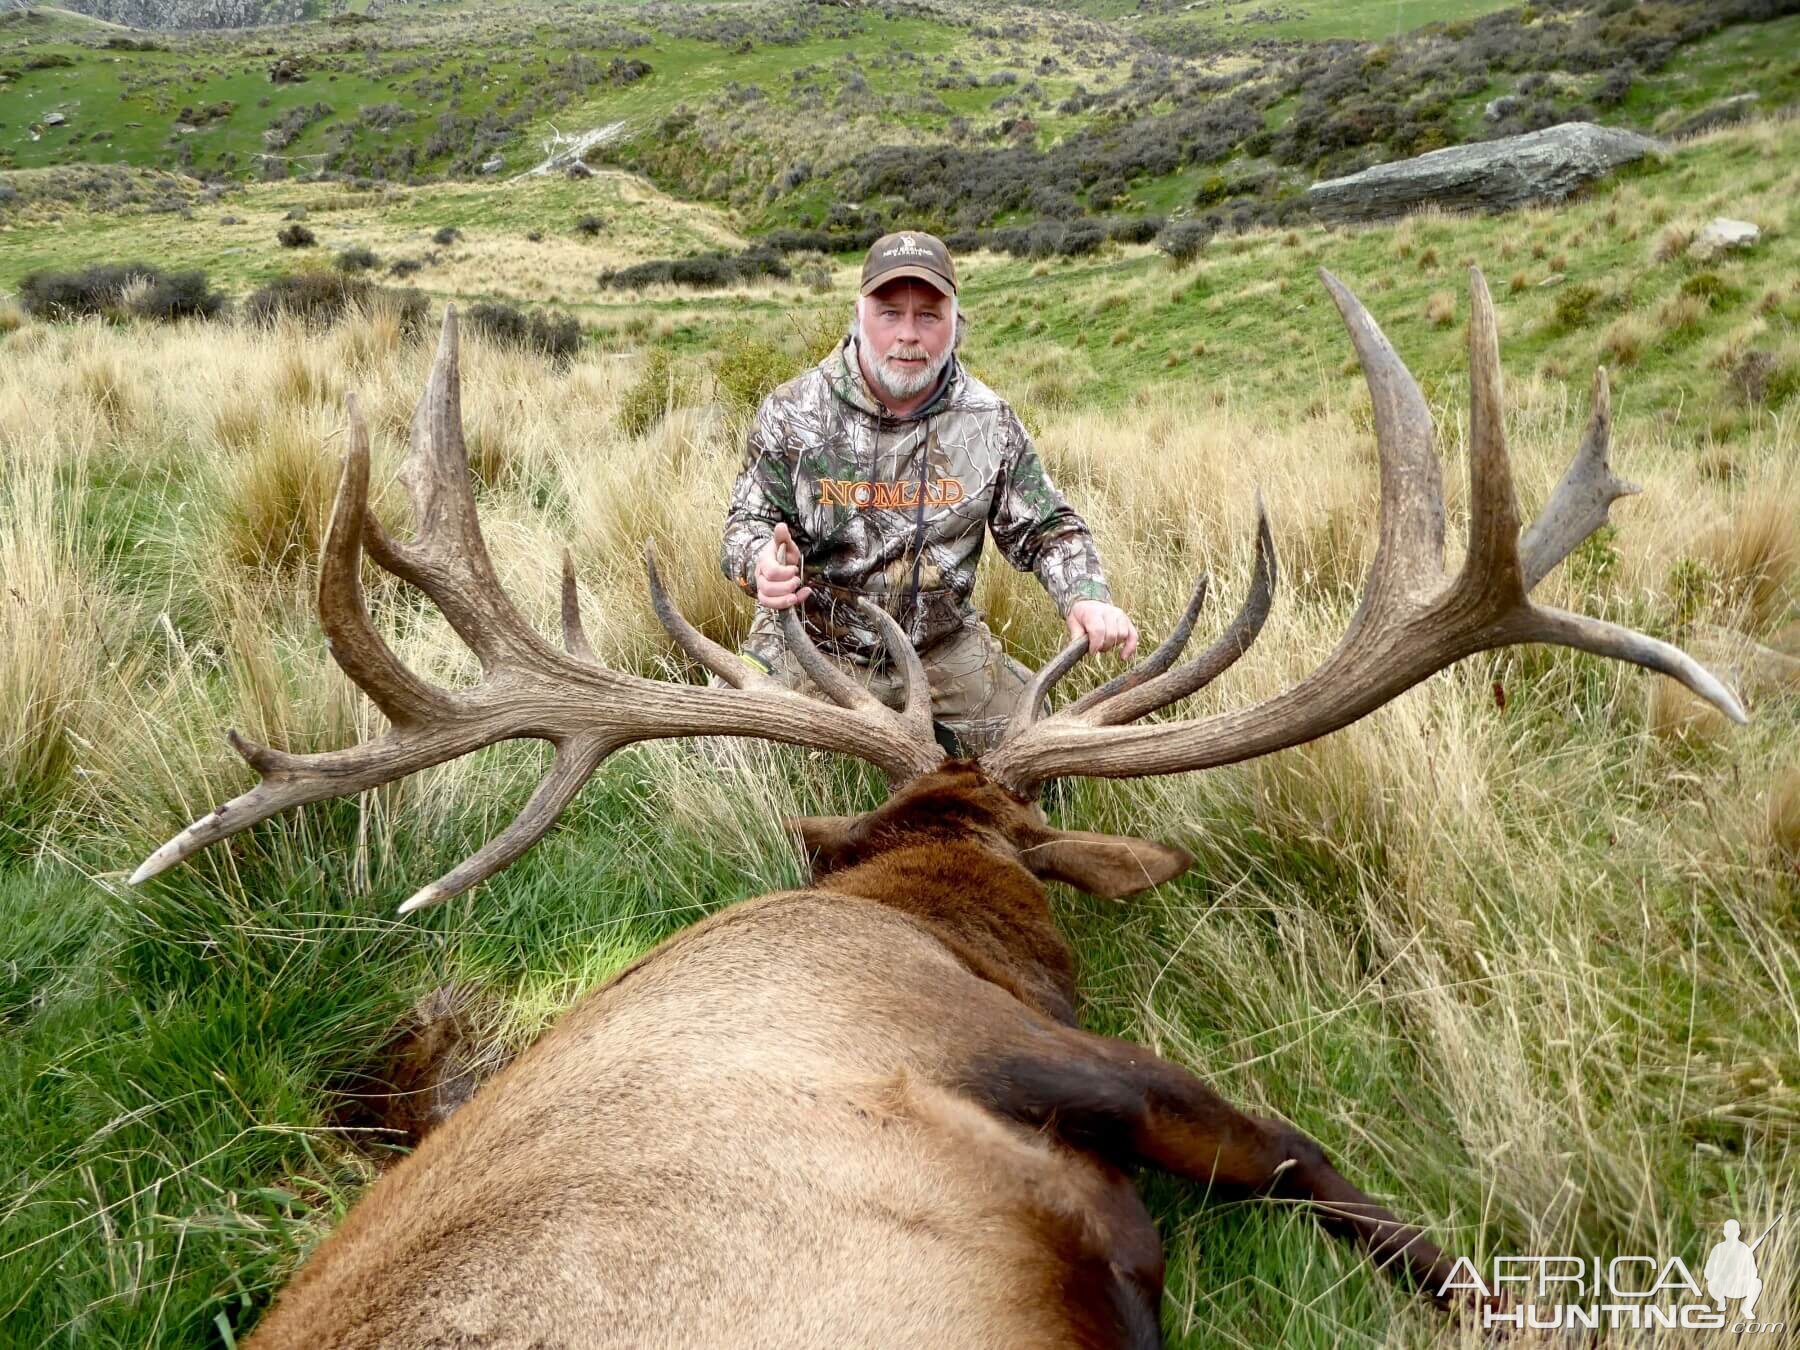 Hunt 469" Inch Elk in New Zealand